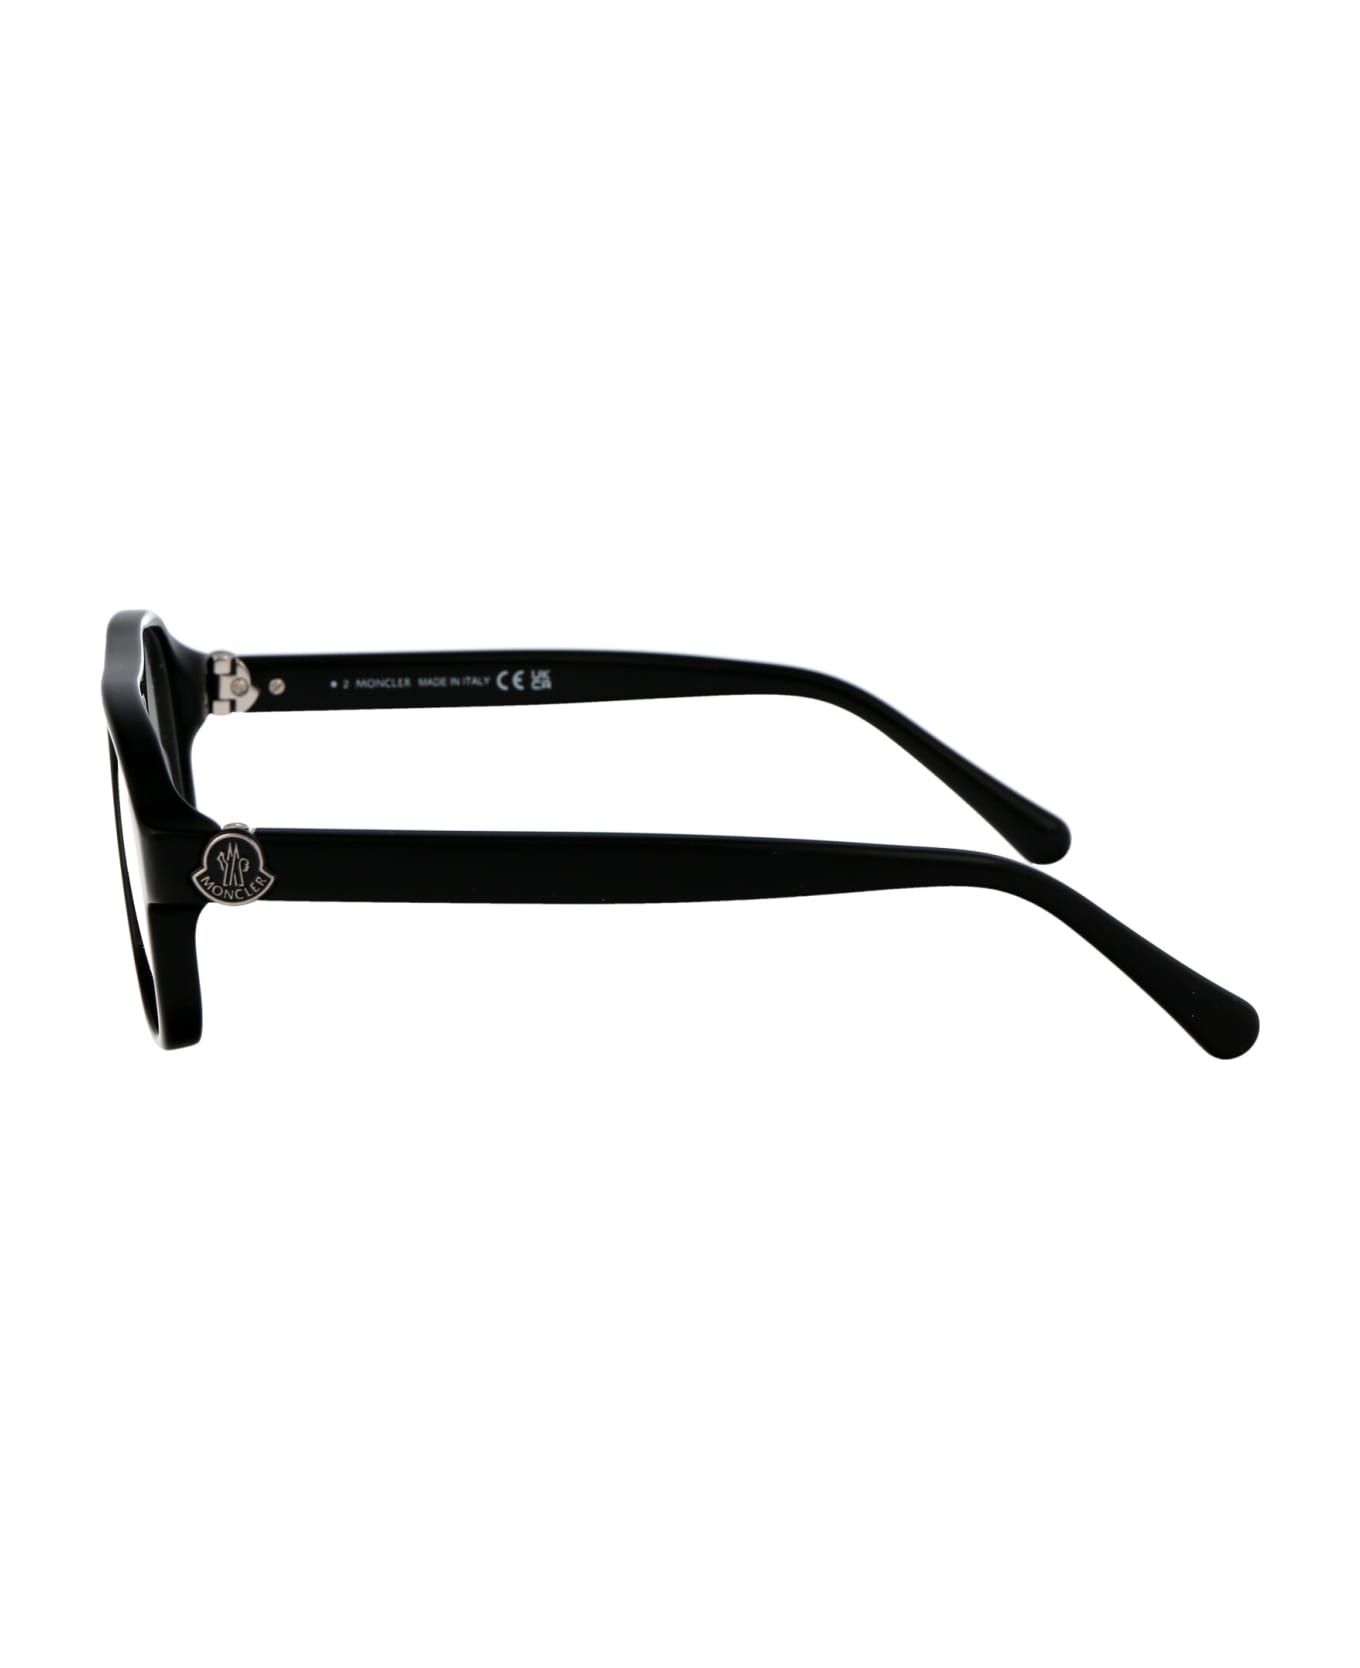 Moncler Eyewear Ml5198 Glasses - 001 Nero Lucido